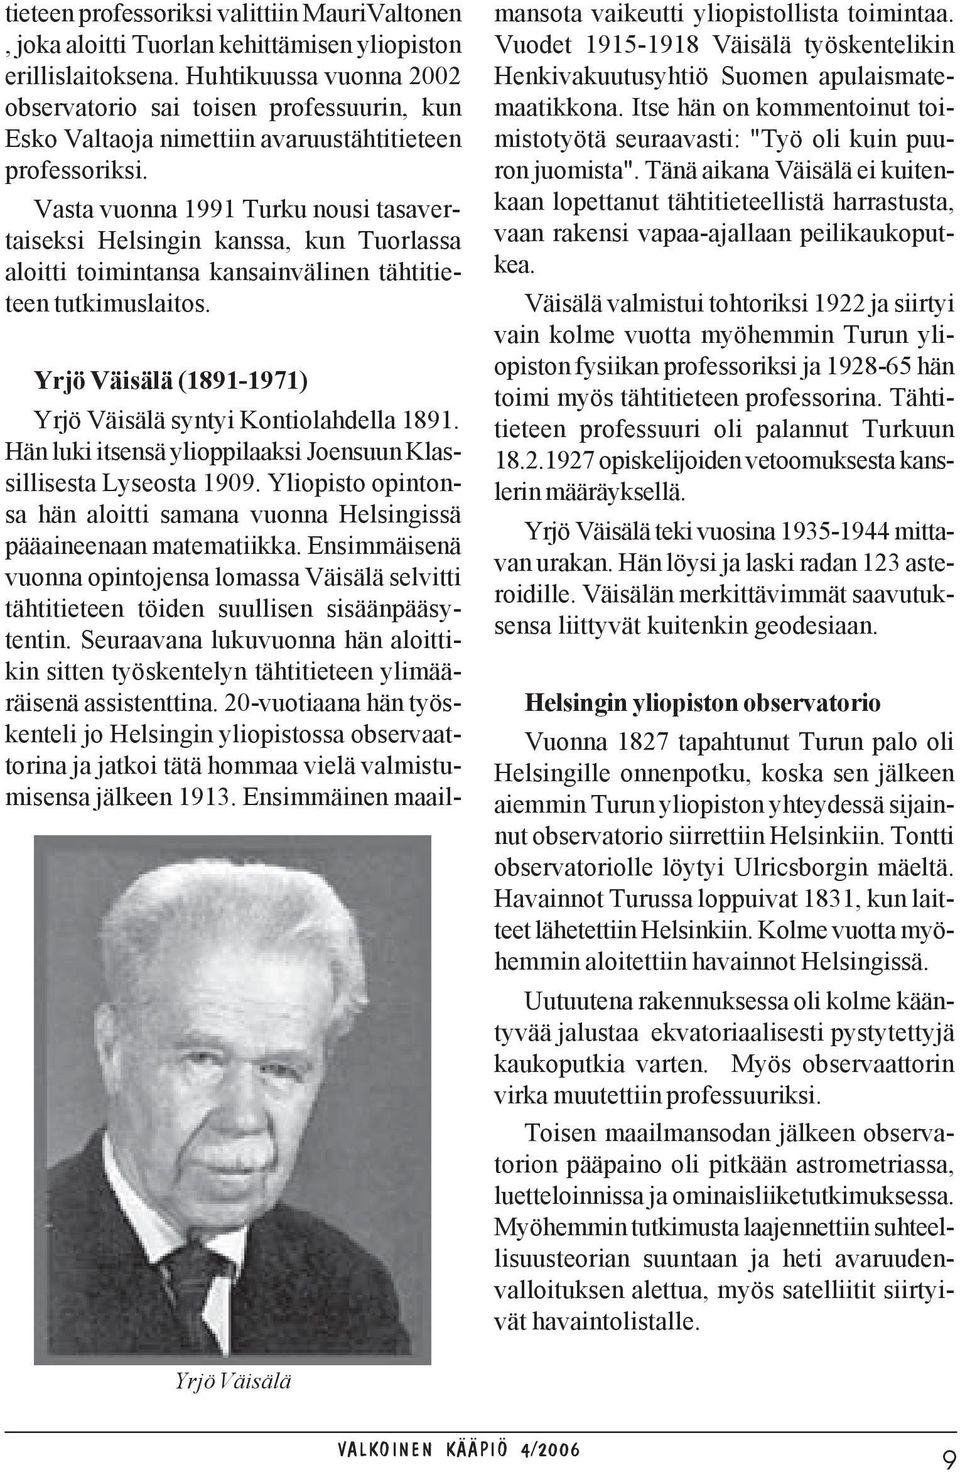 Vasta vuonna 1991 Turku nousi tasavertaiseksi Helsingin kanssa, kun Tuorlassa aloitti toimintansa kansainvälinen tähtitieteen tutkimuslaitos.